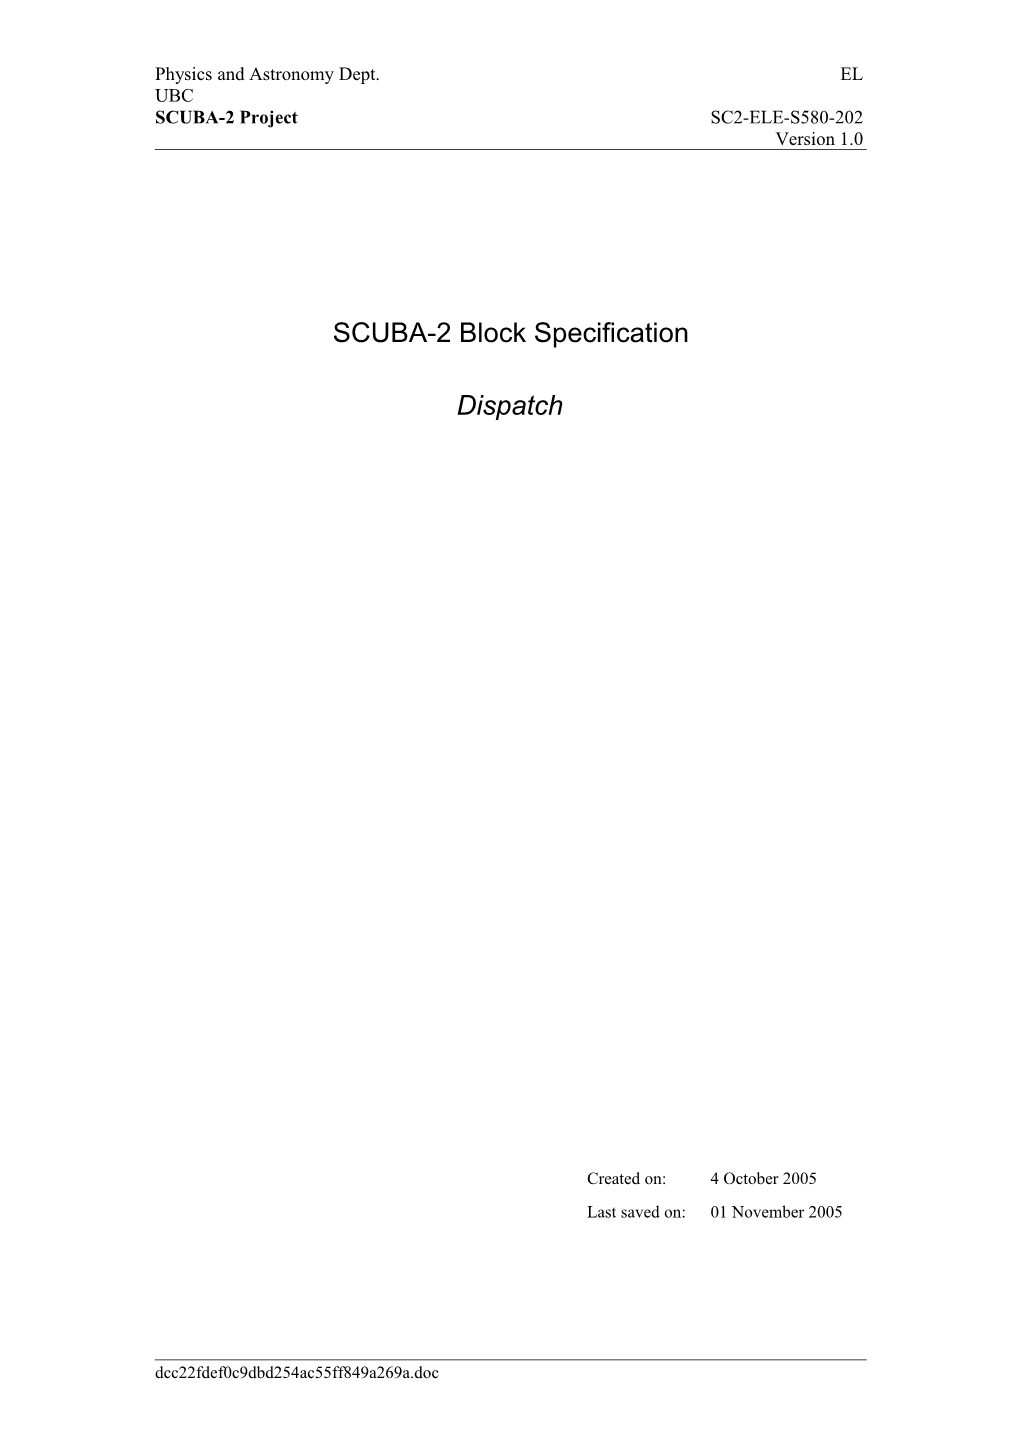 SCUBA-2 Block Specification